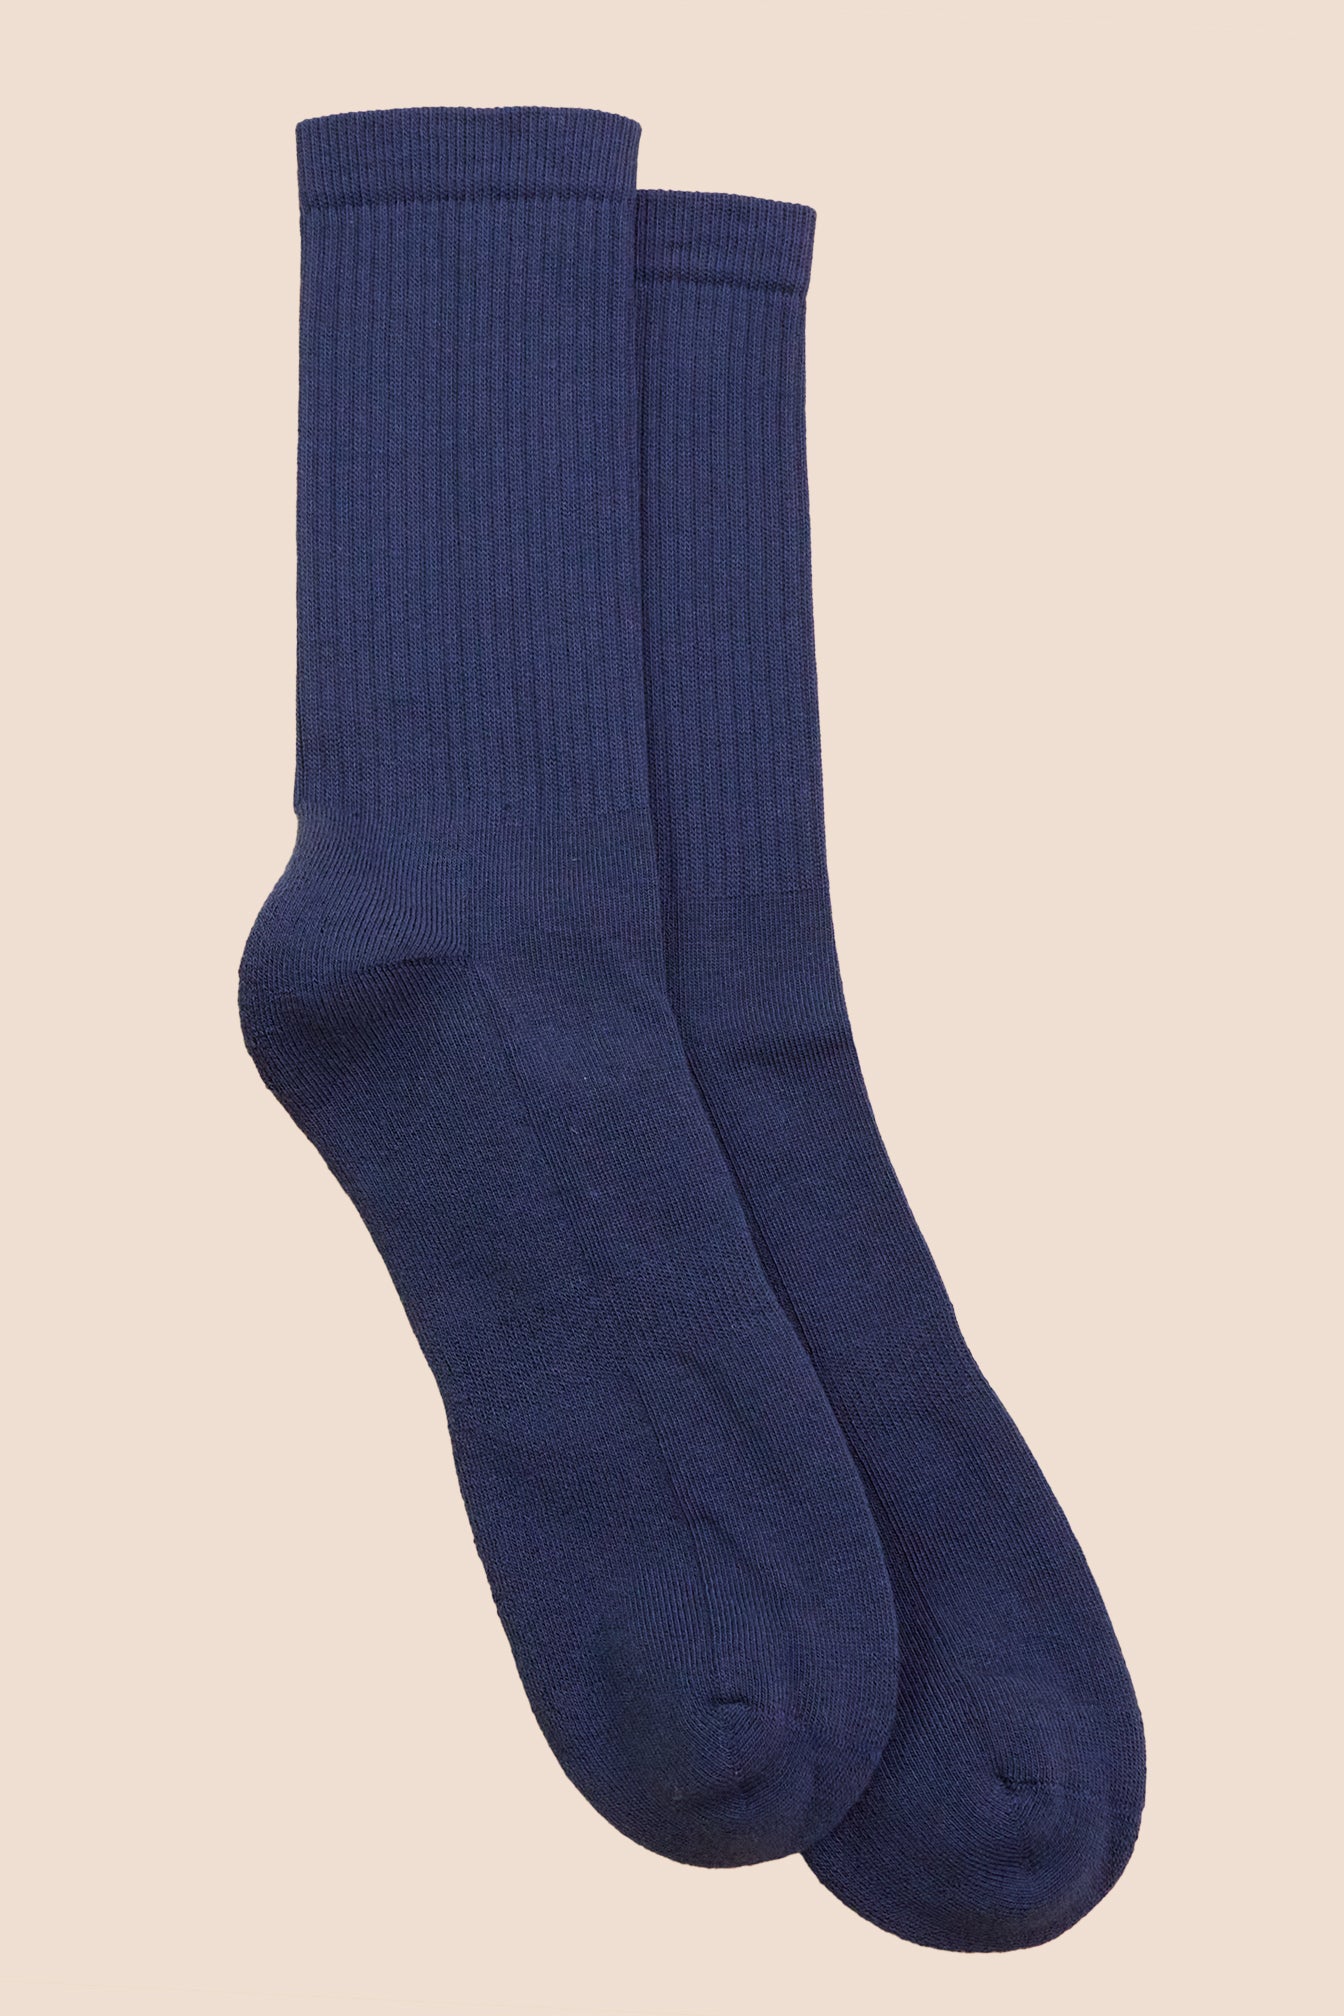 Petrone-chaussettes-tennis-coton-bio-unies-hautes-homme-bleu-acier-posees